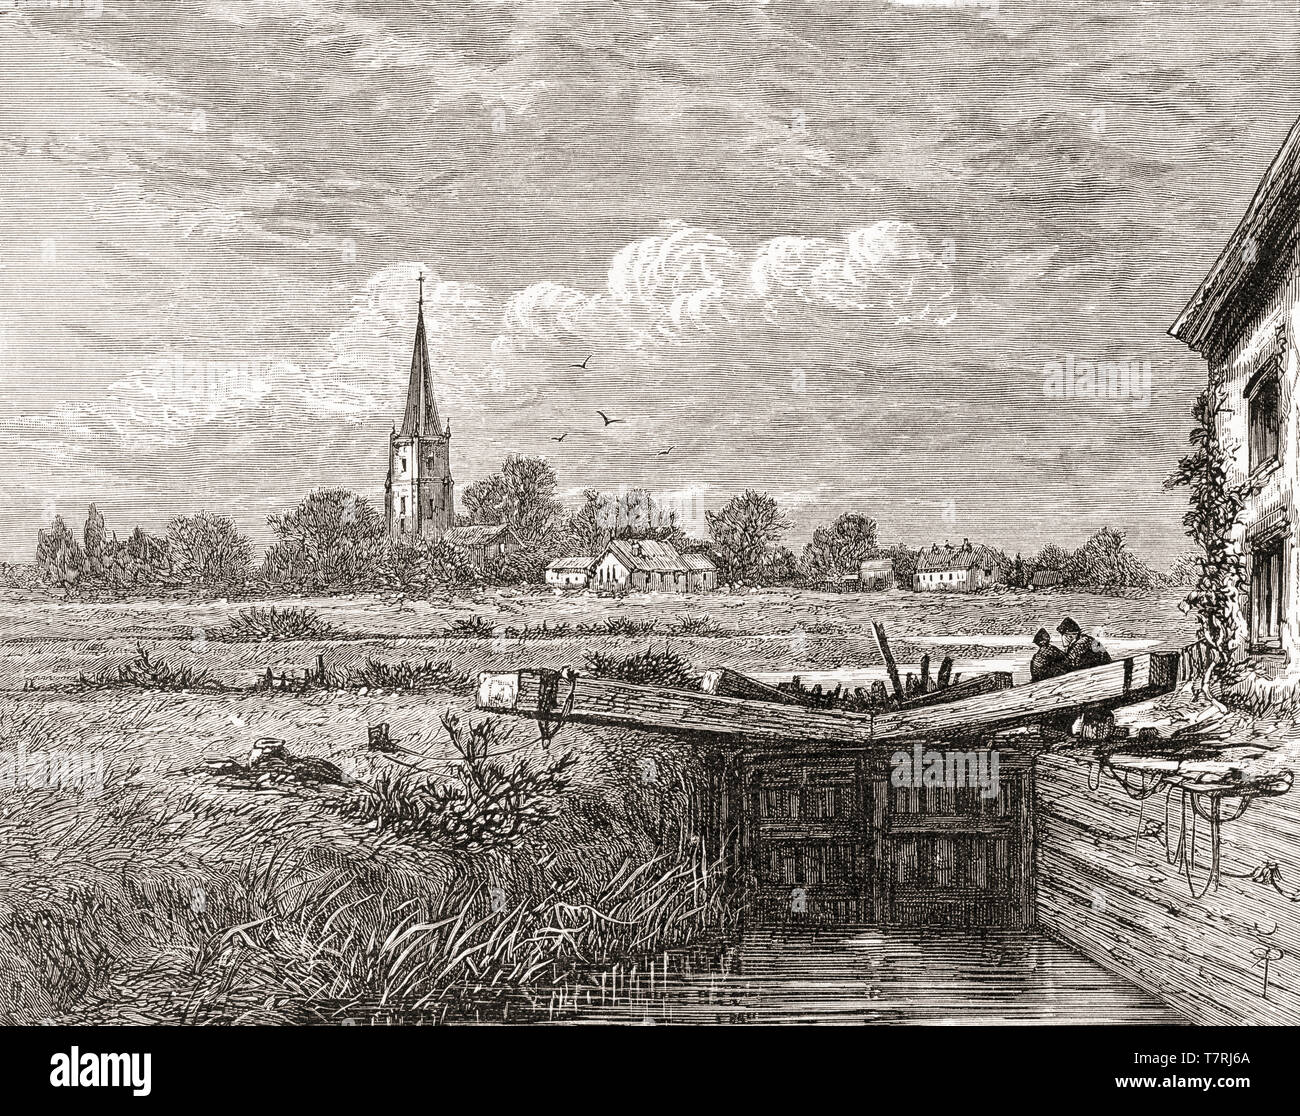 Lechlade ou Lechlade-on-Thames, les Cotswolds, Gloucestershire, Angleterre, vu ici au 19e siècle. Le point le plus élevé où la Tamise est navigable. Photos de l'anglais, publié en 1890. Banque D'Images